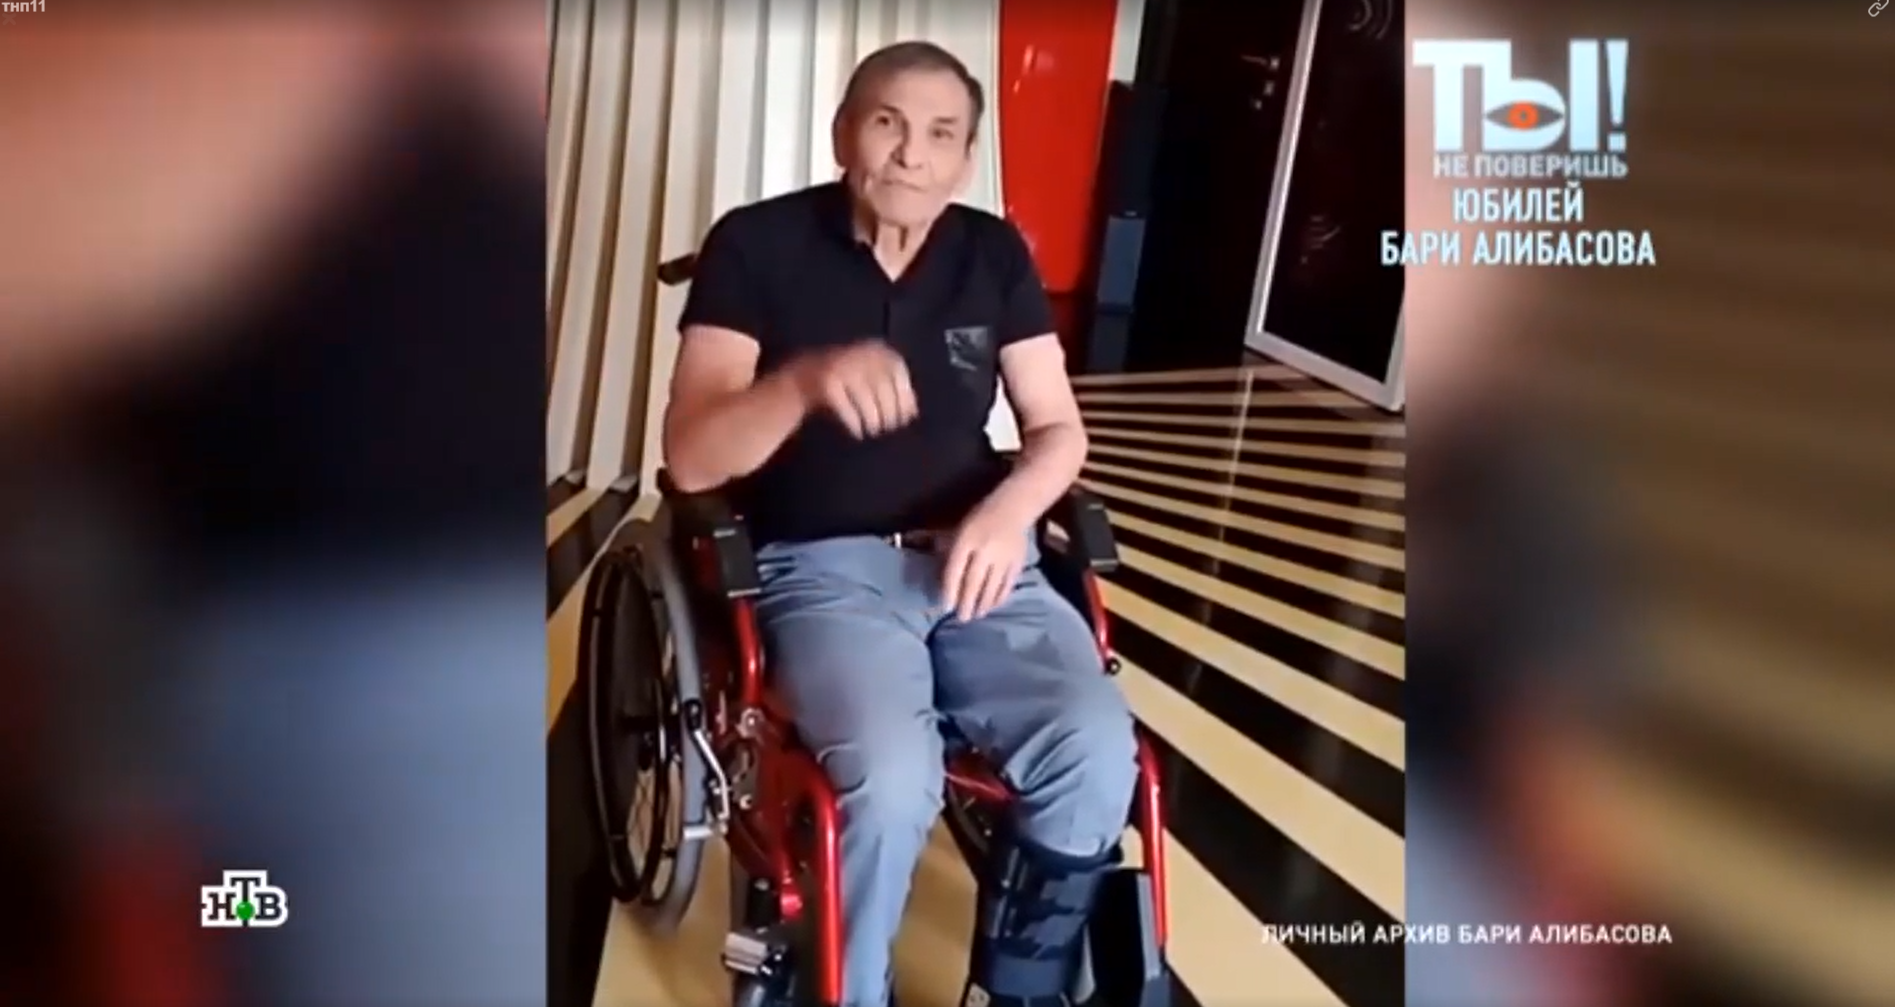 Бари алибасов инсульт. Бари Алибасов в инвалидном кресле. Бари Алибасов 20 лет назад. Племянник Бари Алибасова.